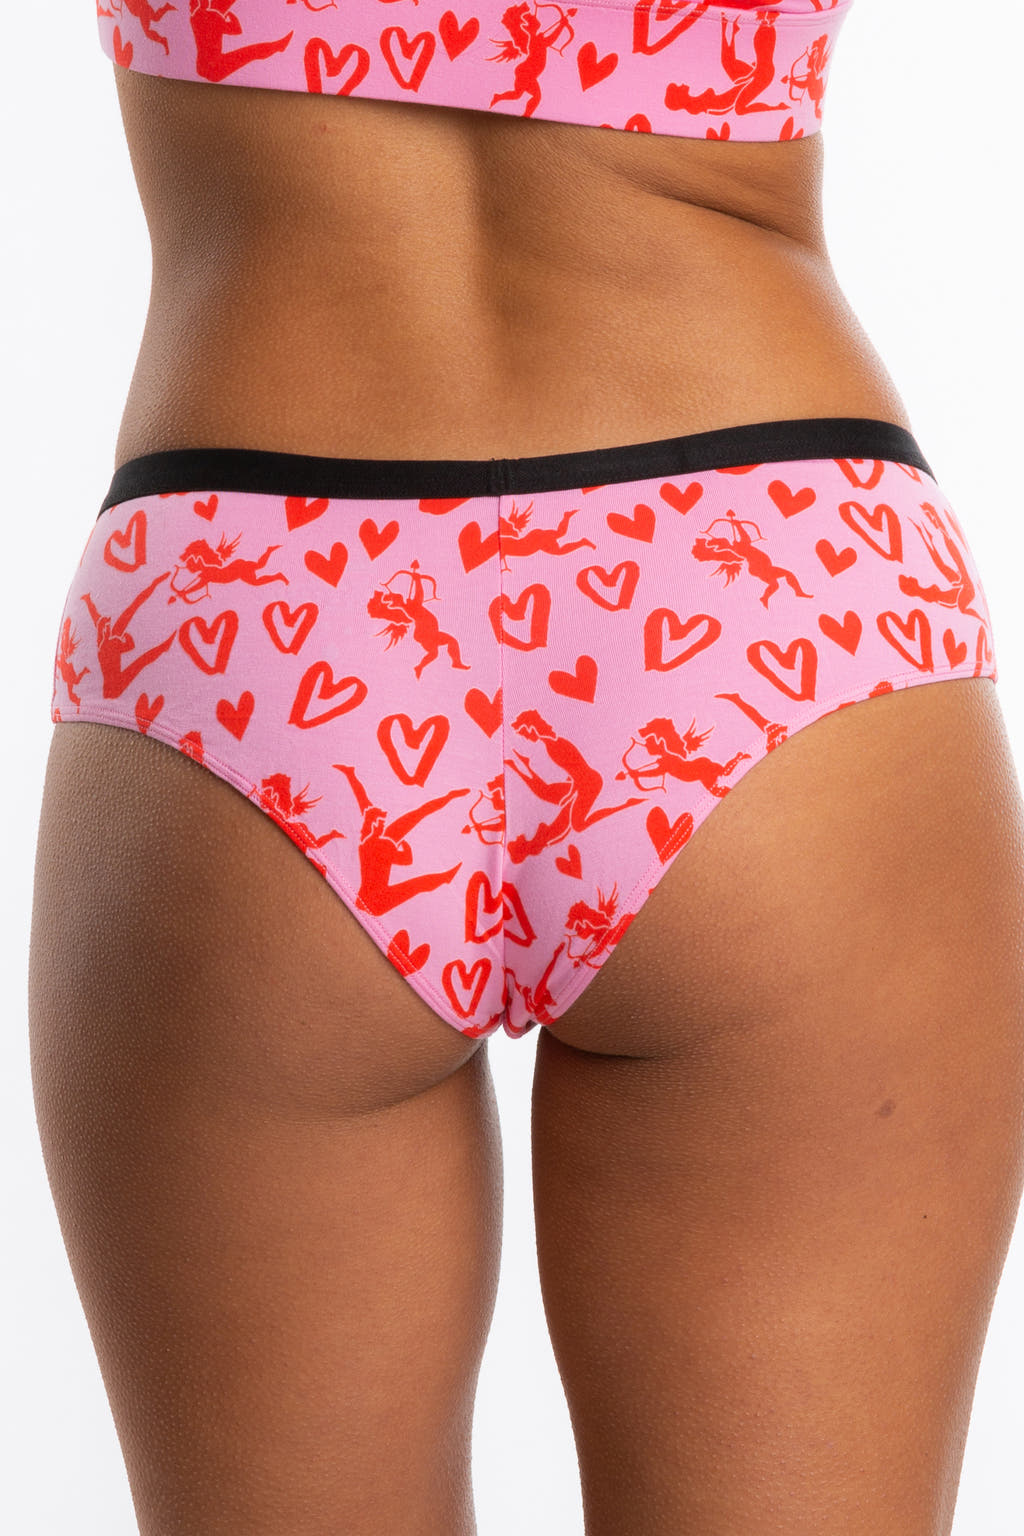 red cupid valentines day underwear